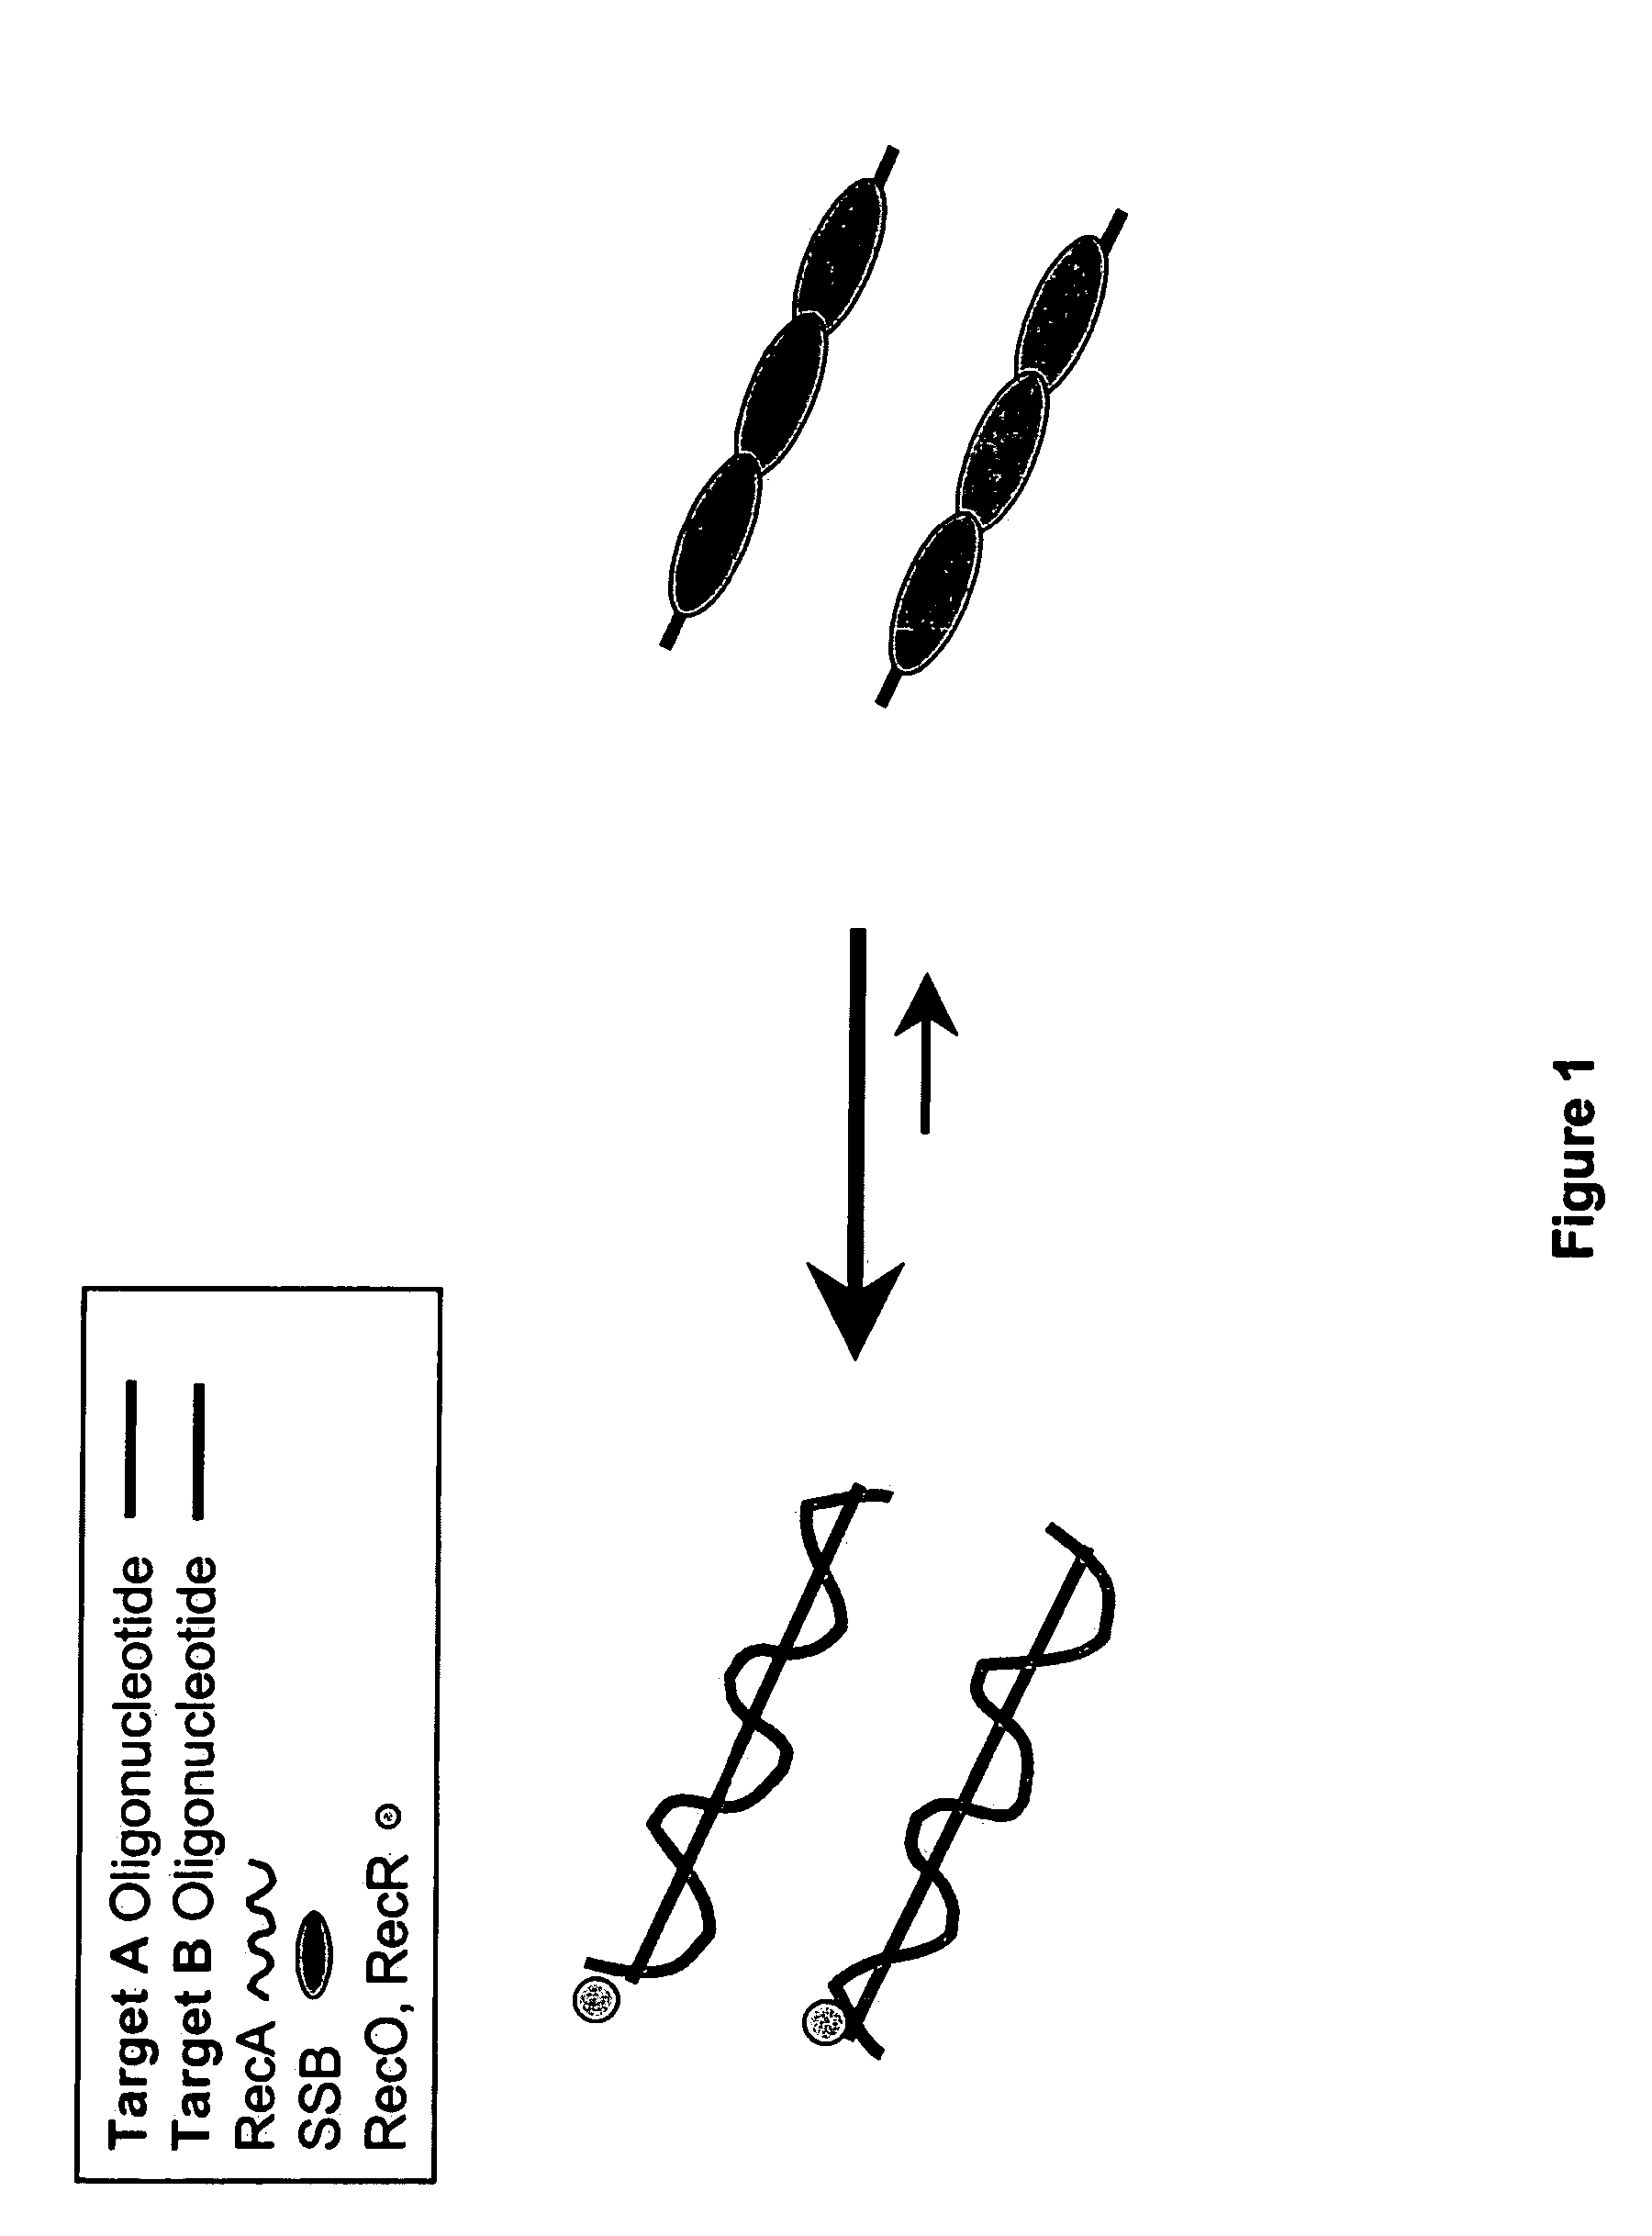 Recombinase polymerase amplification